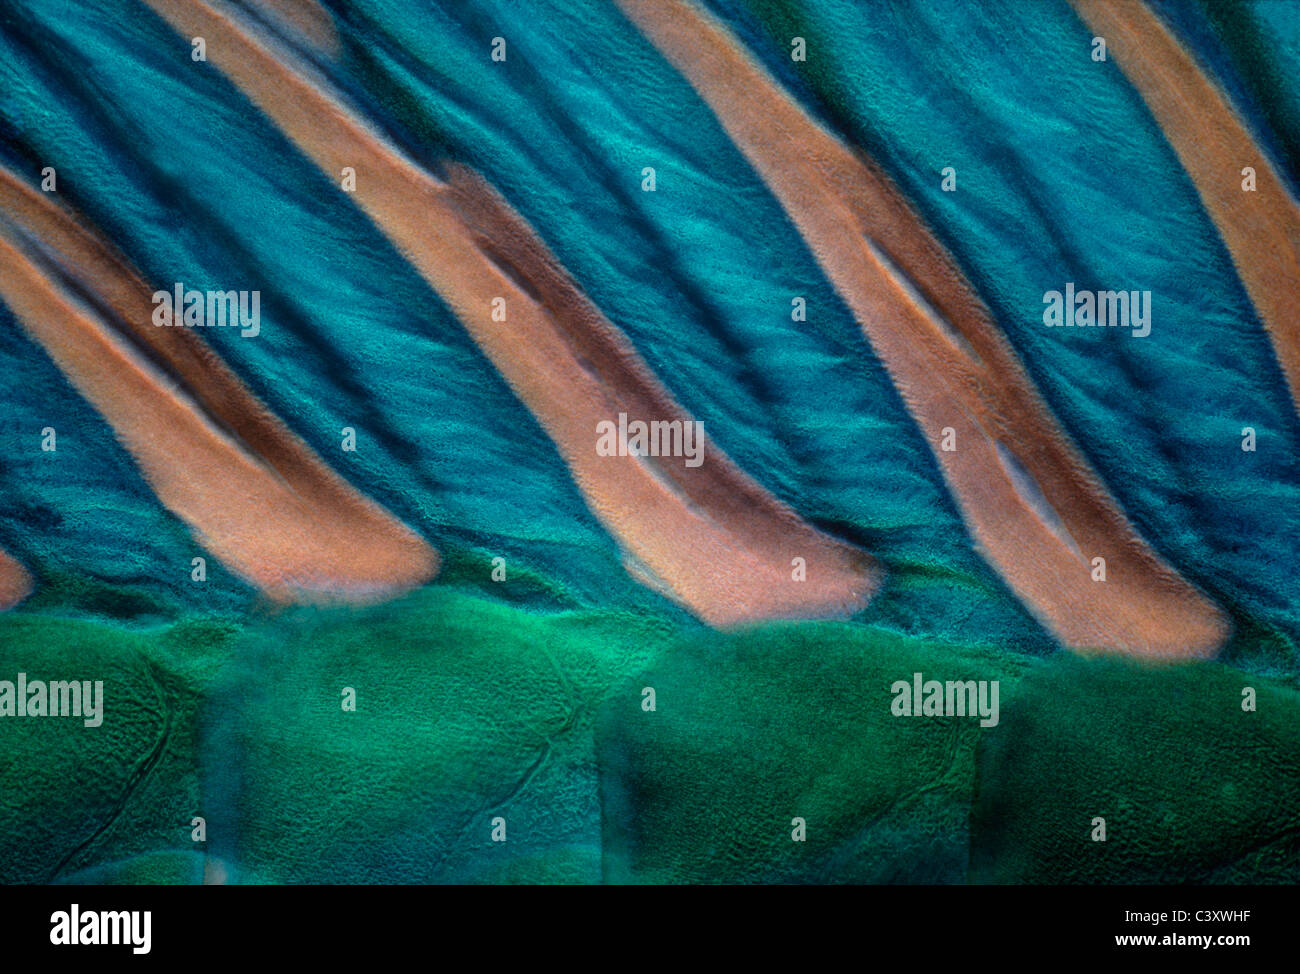 Pelle e spine dorsali di pesci pappagallo bicolore (Cetoscarus bicolor). Egitto, Mar Rosso. Foto Stock